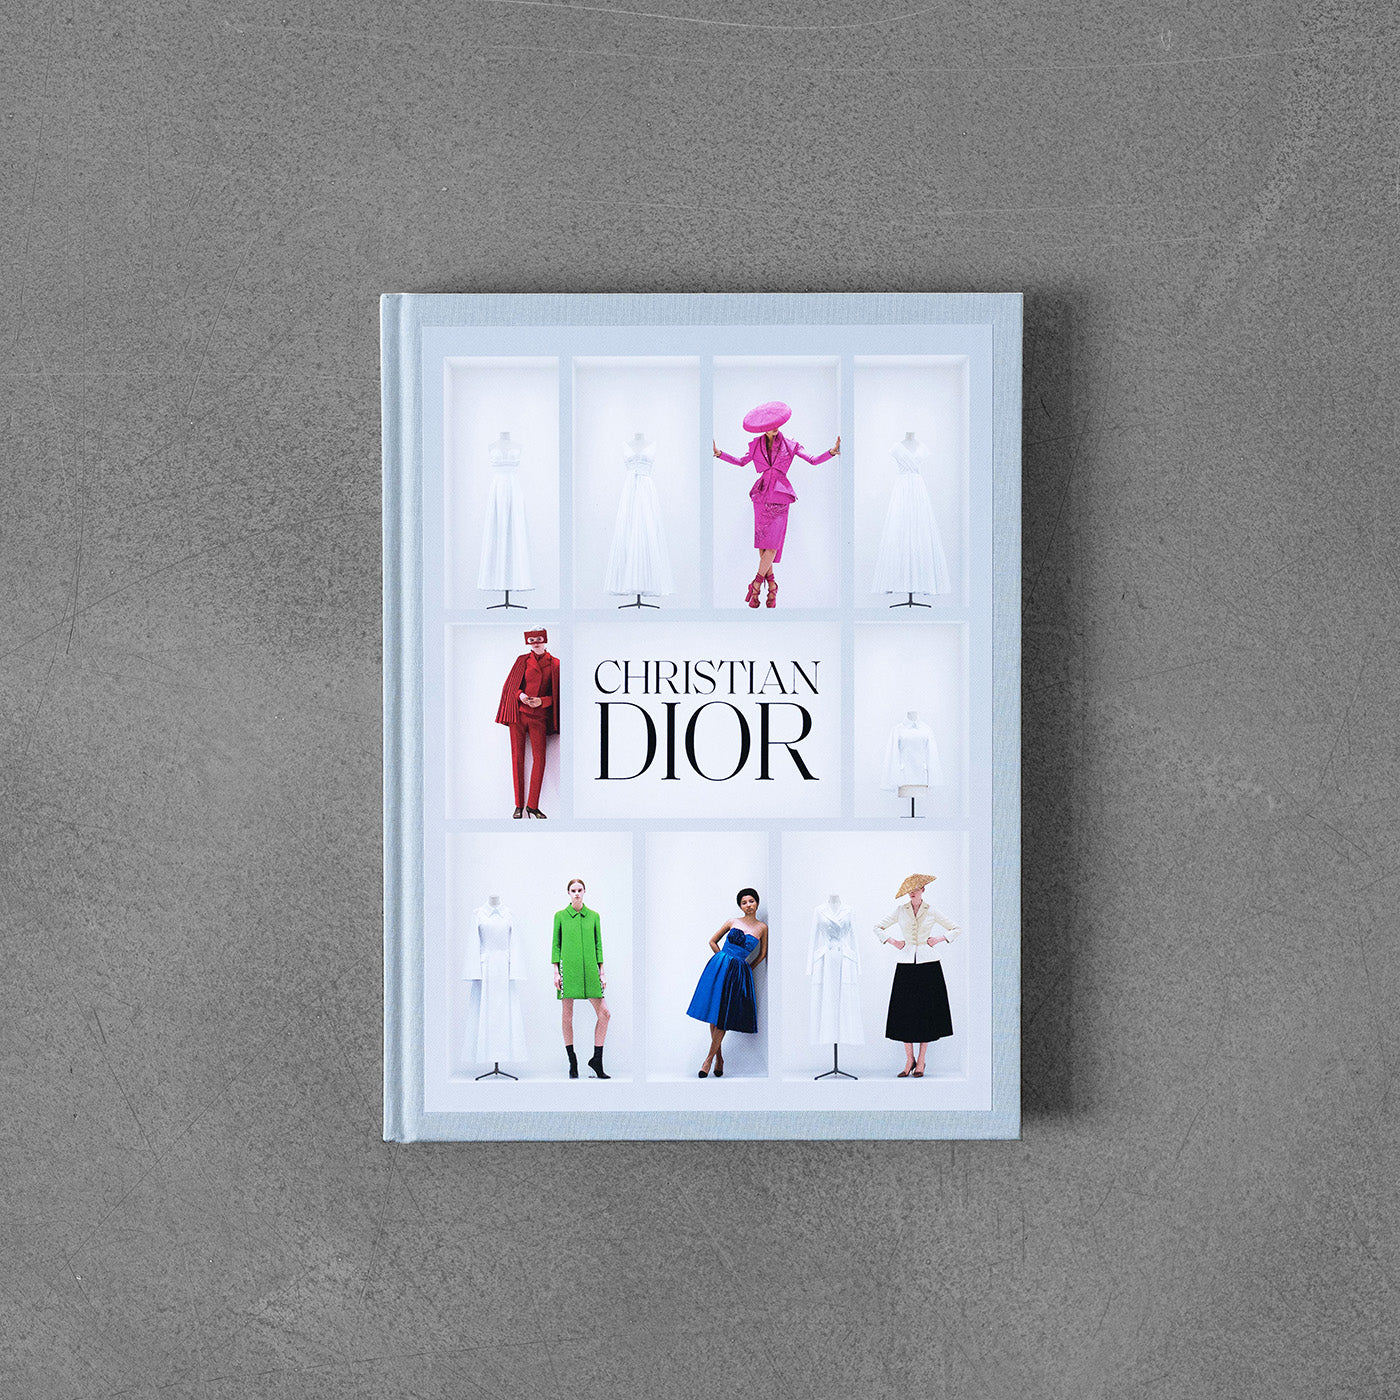 Christian Dior V&A